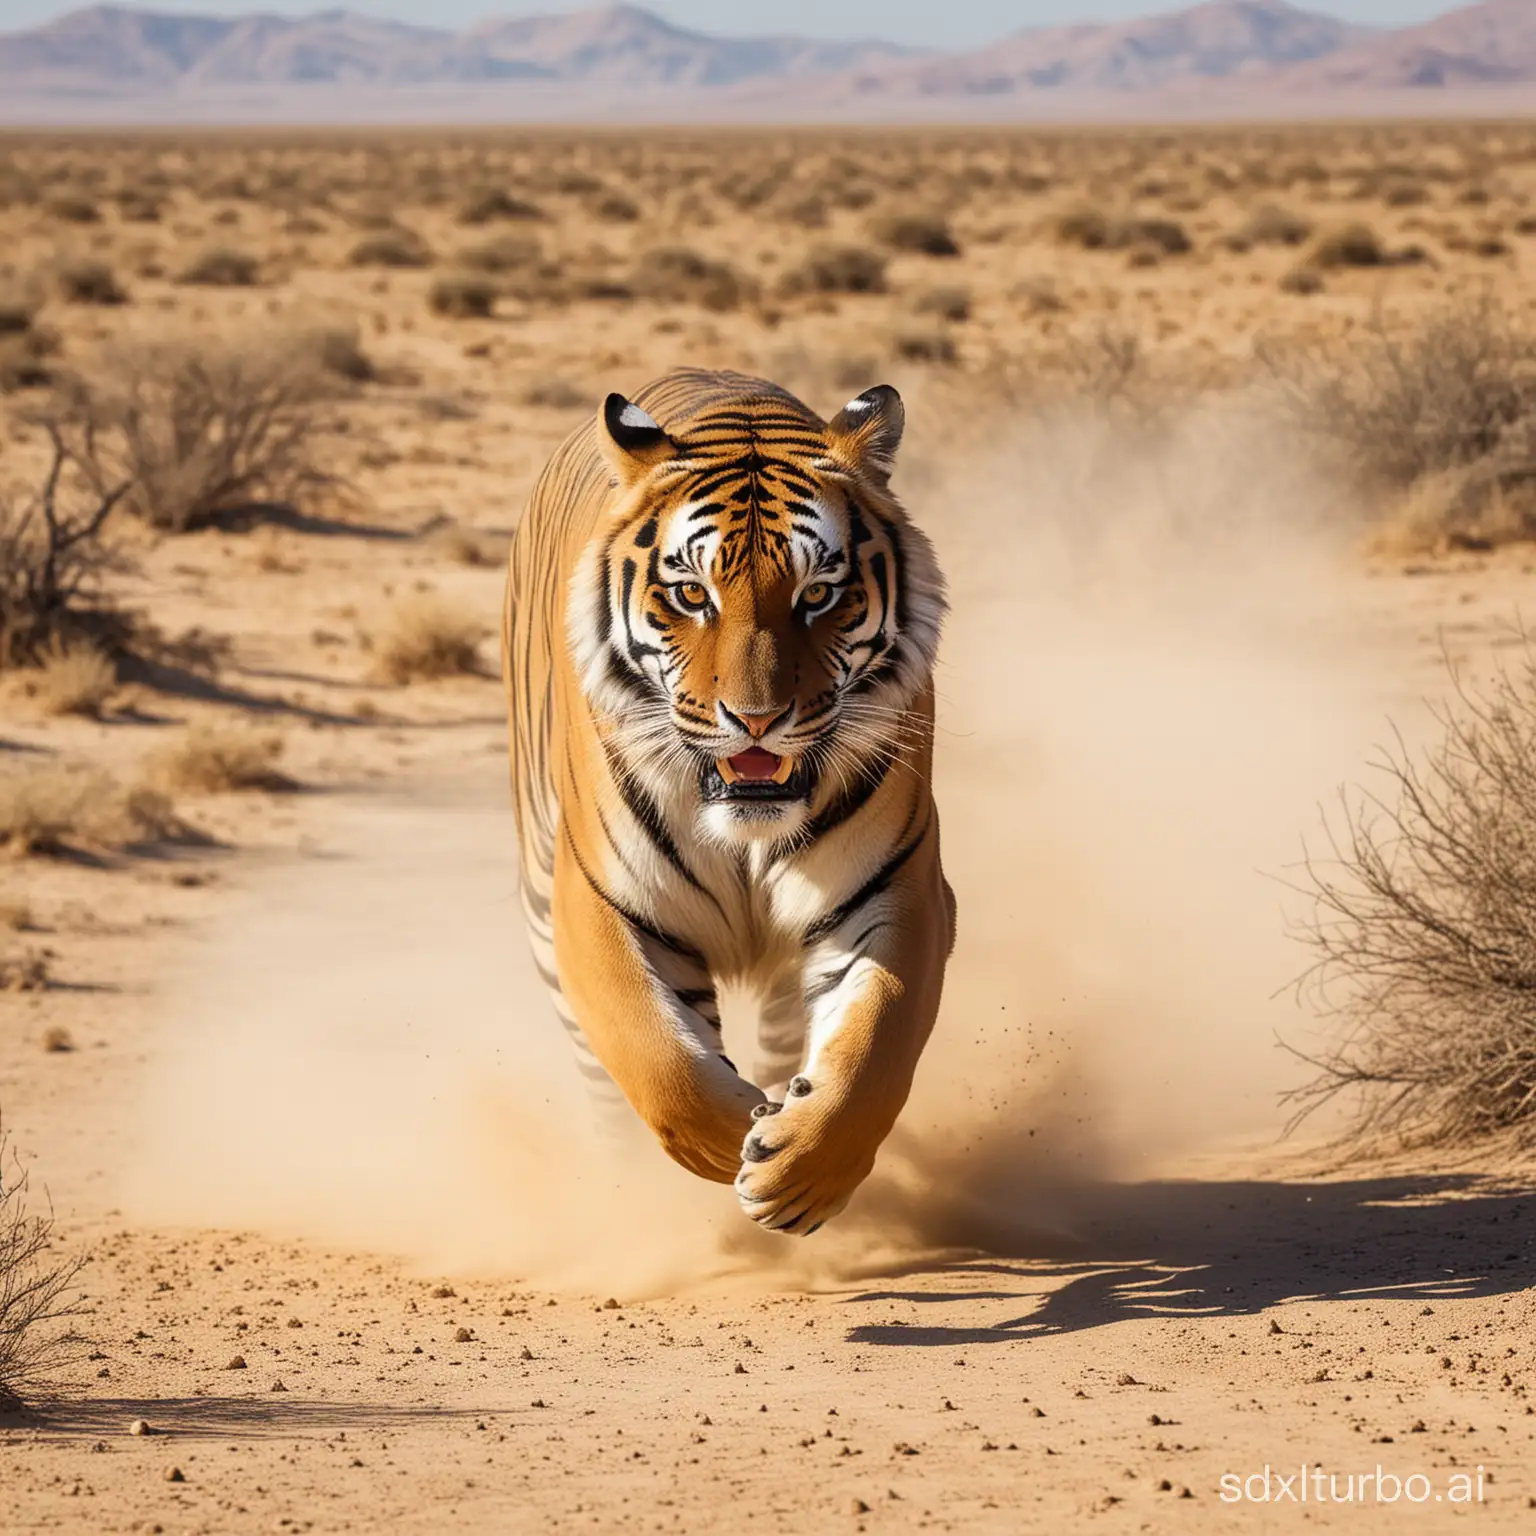 Graceful-Tiger-Sprinting-Across-the-Arid-Desert-Landscape